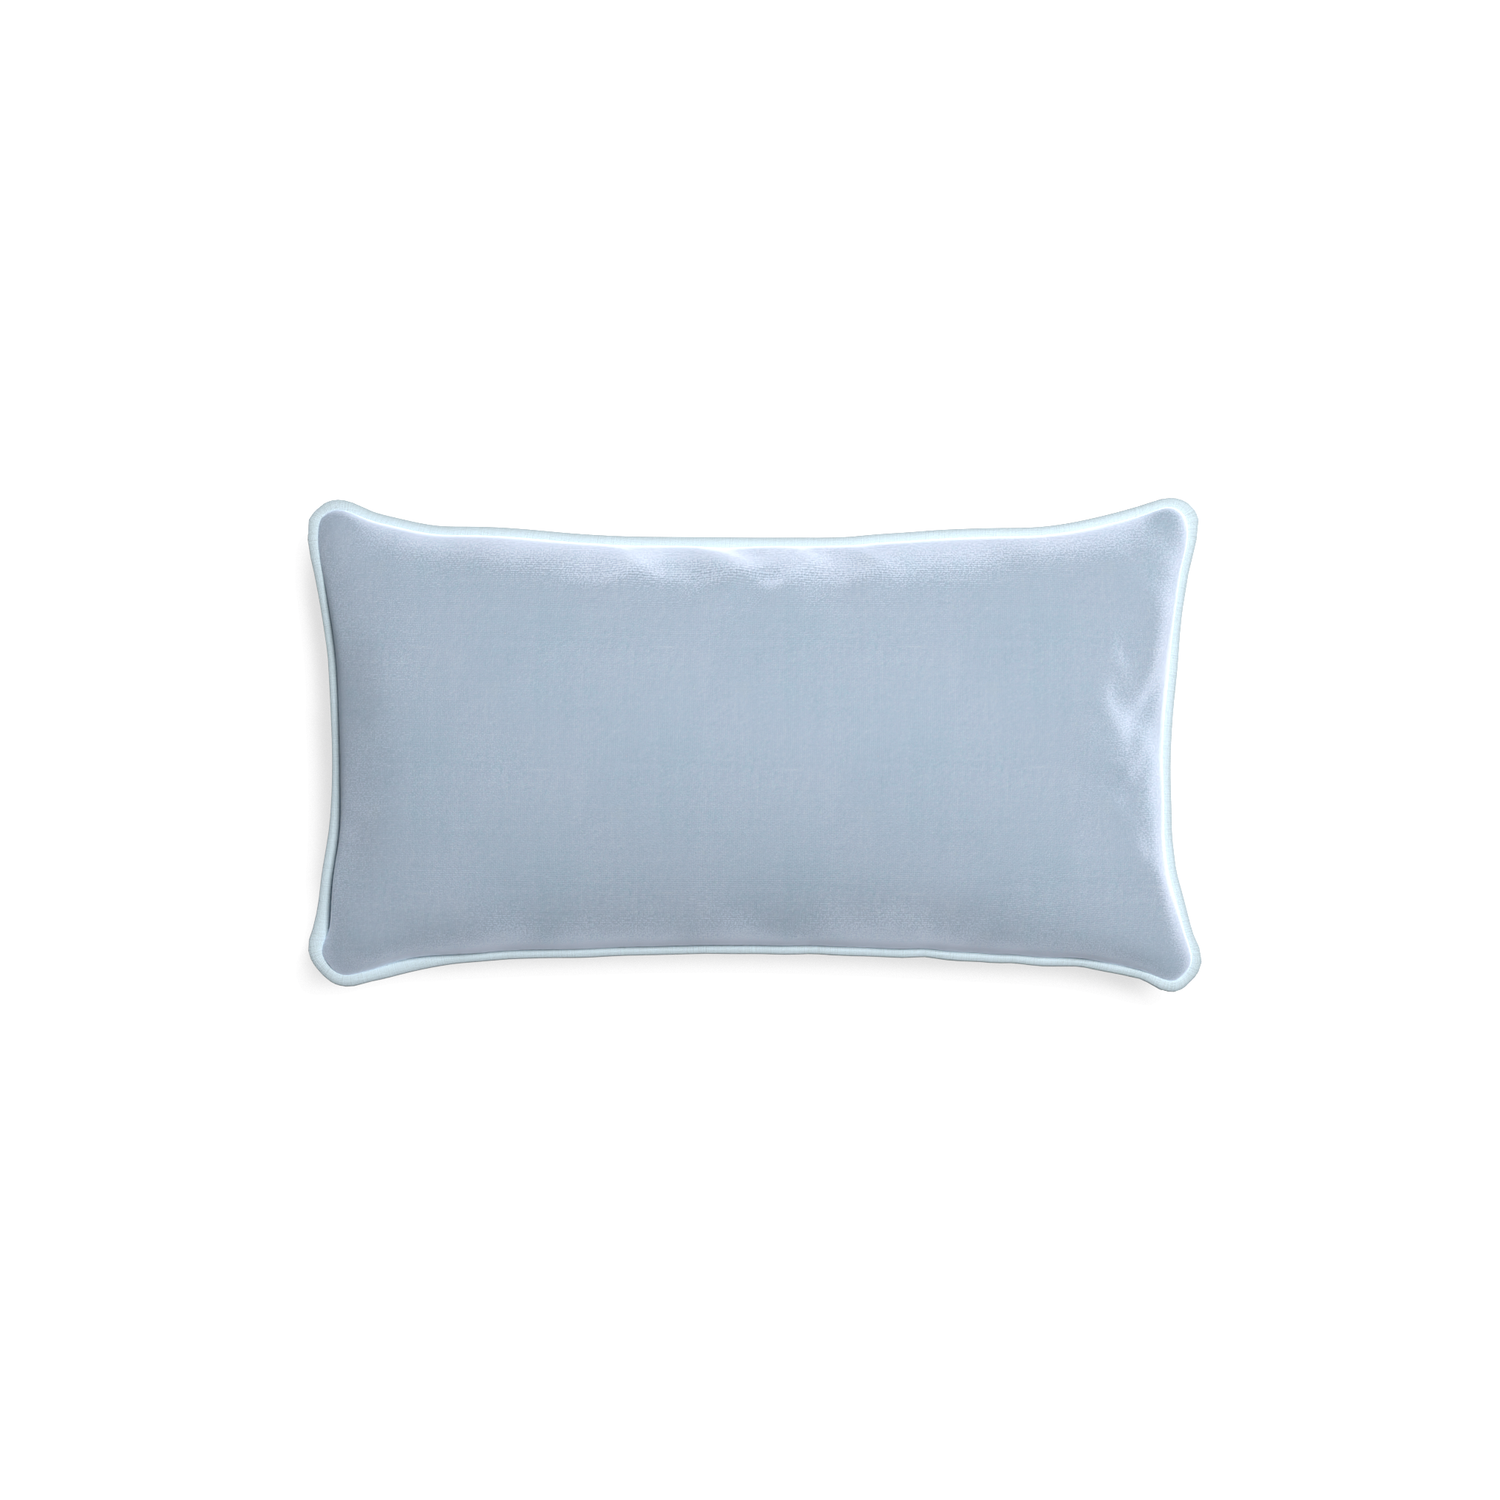 rectangle light blue velvet pillow with light blue piping